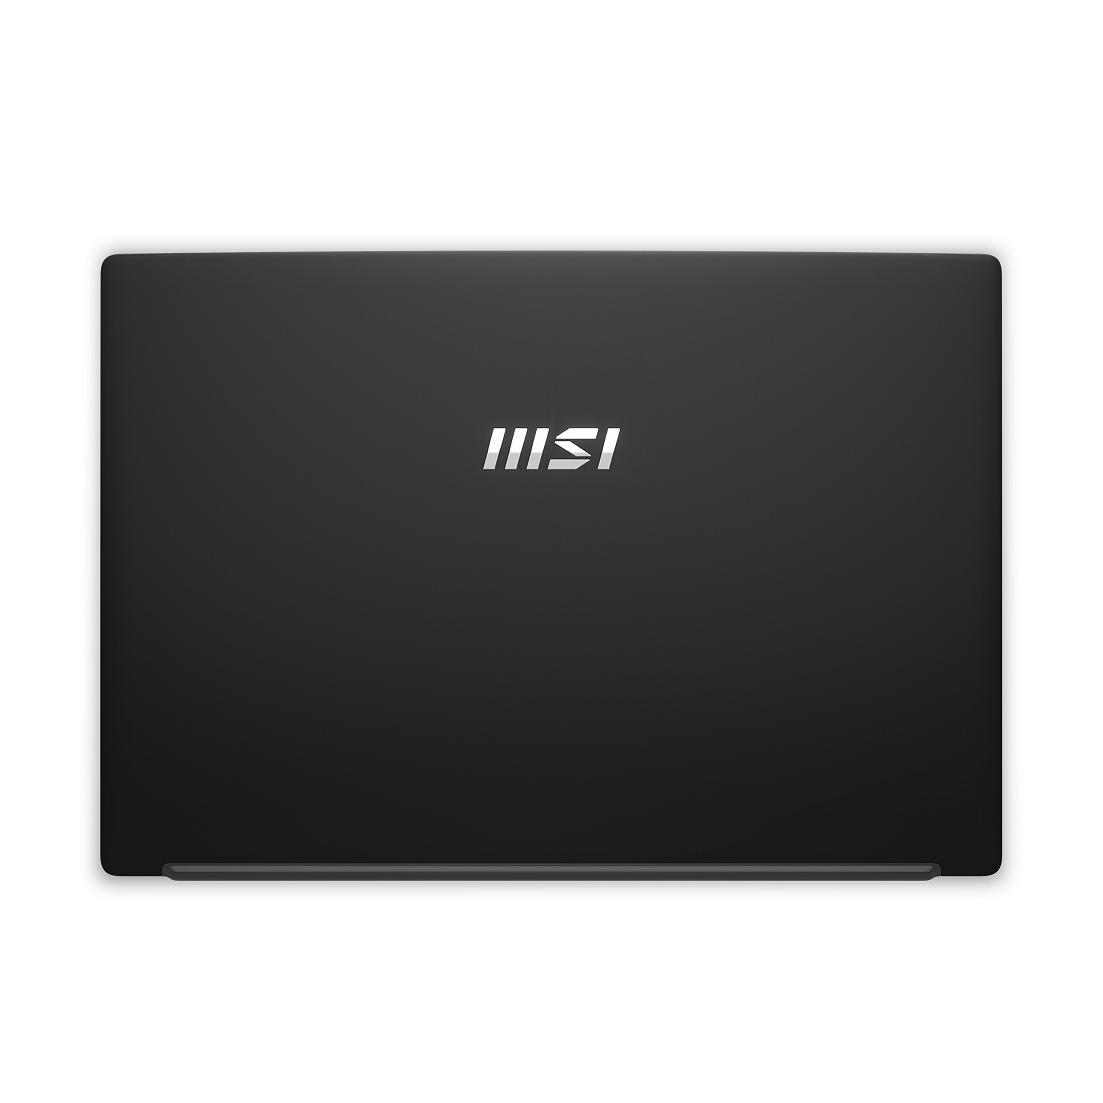 MSI Laptop Modern 14 C11M-011VN|Intel i3-1115G4|Card UHD|Ram 8GB| Bộ nhớ 512GB SSD|Màn hình 14" FHD, 60Hz, 45% [Hàng chính hãng]